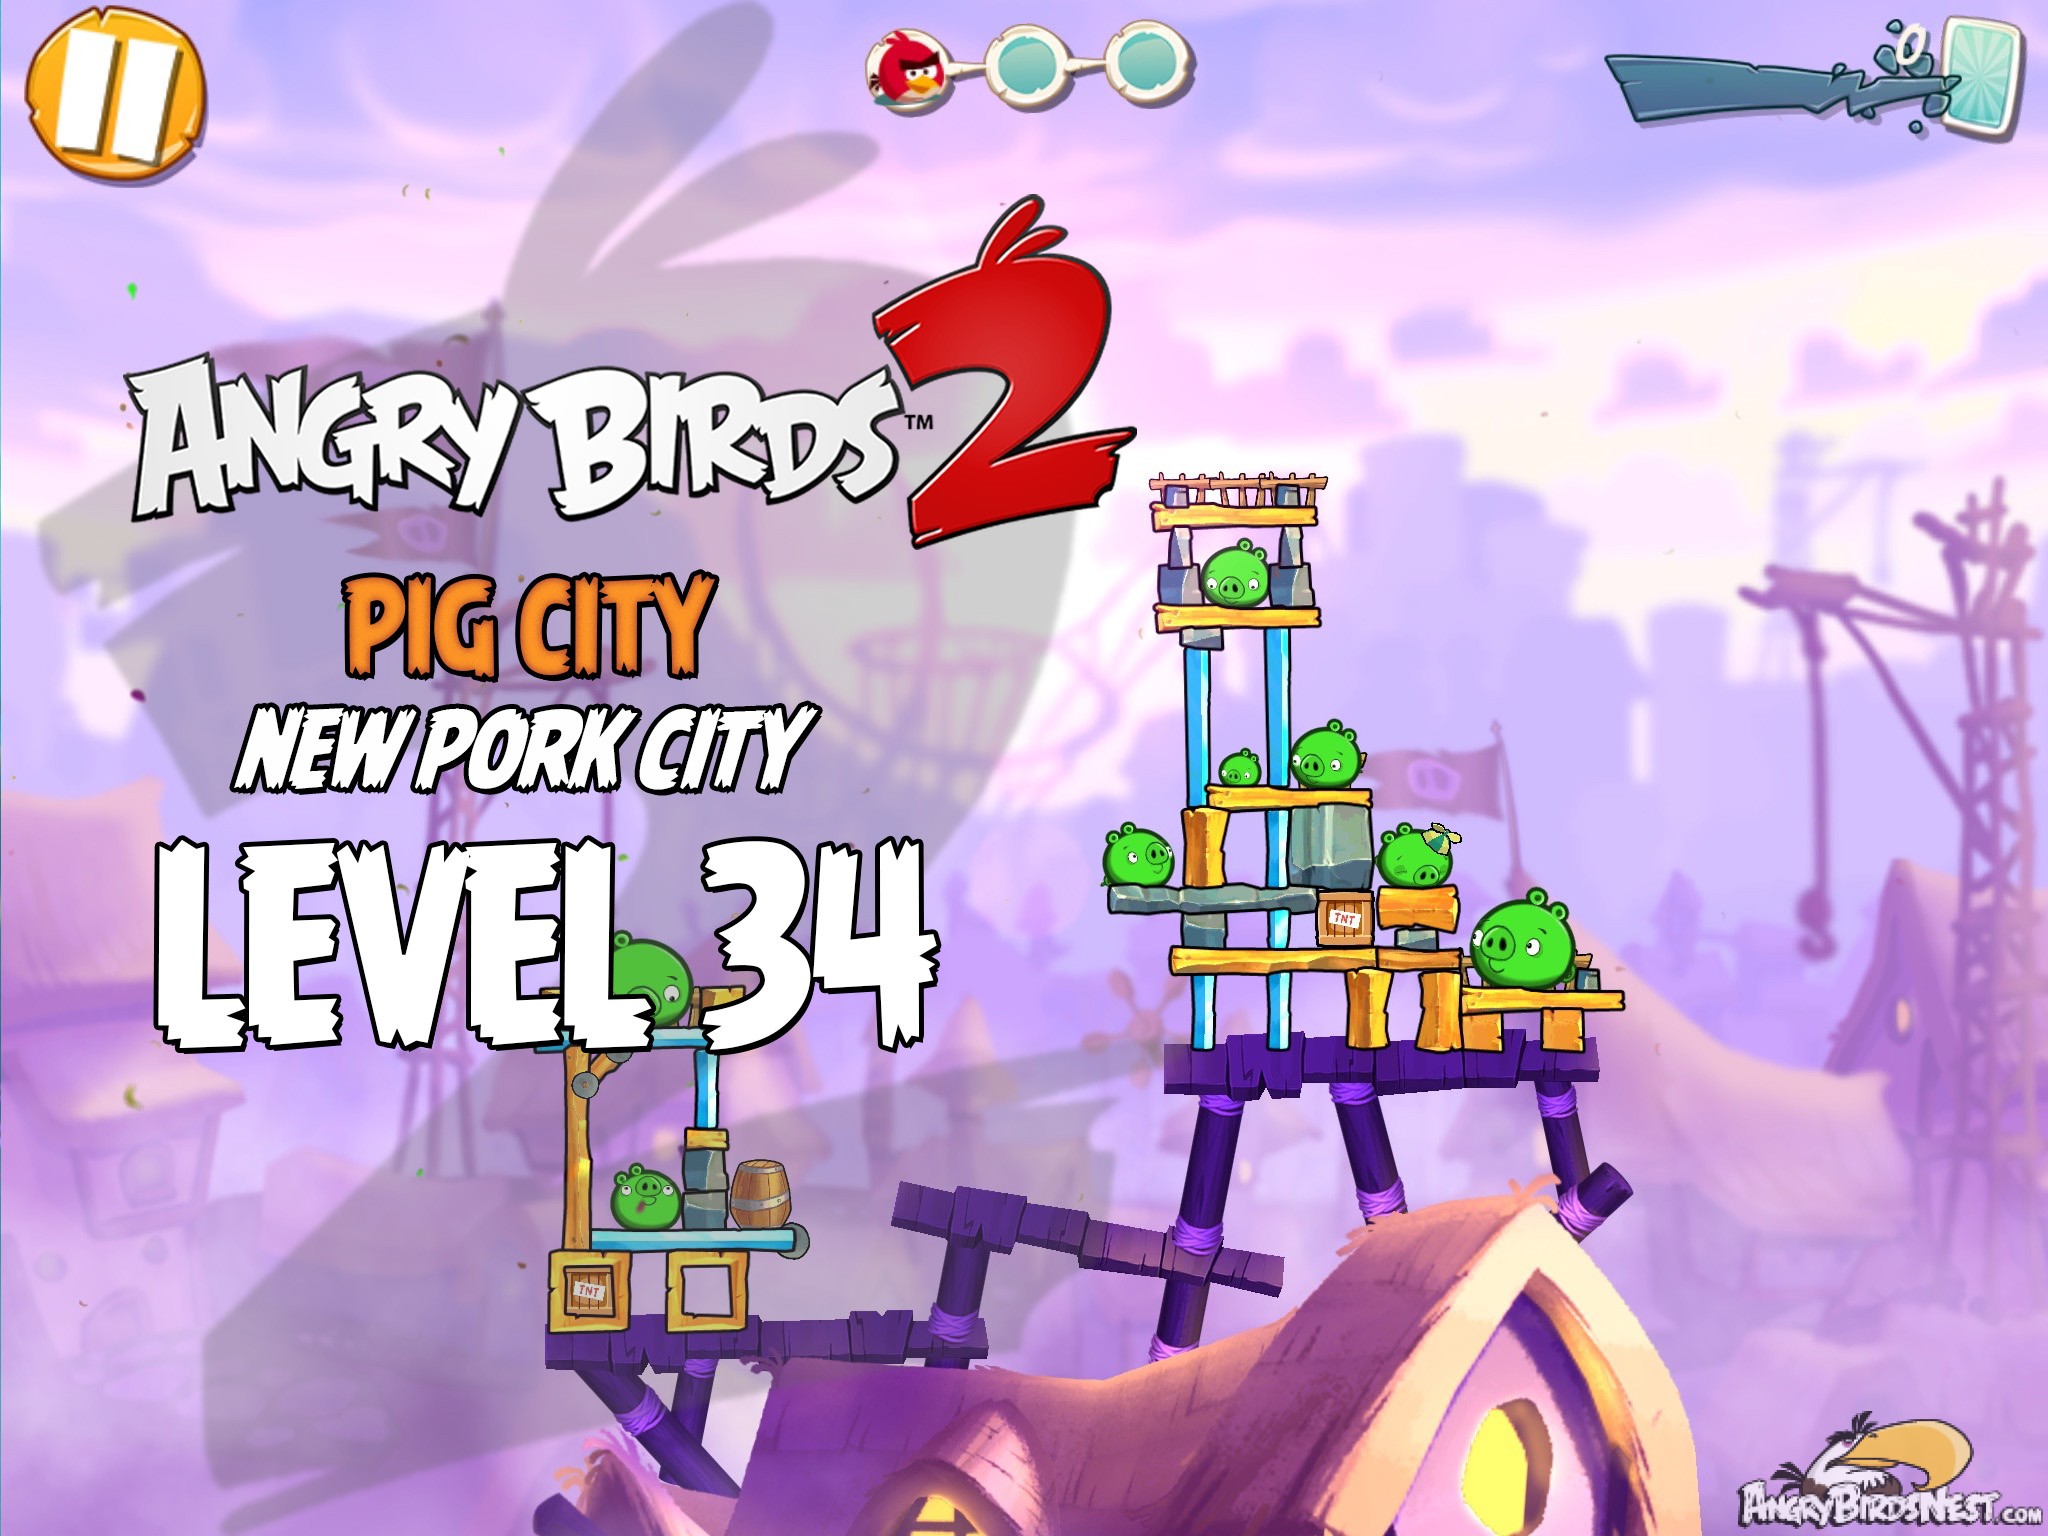 Angry Birds 2 Pig City New Pork City Level 34